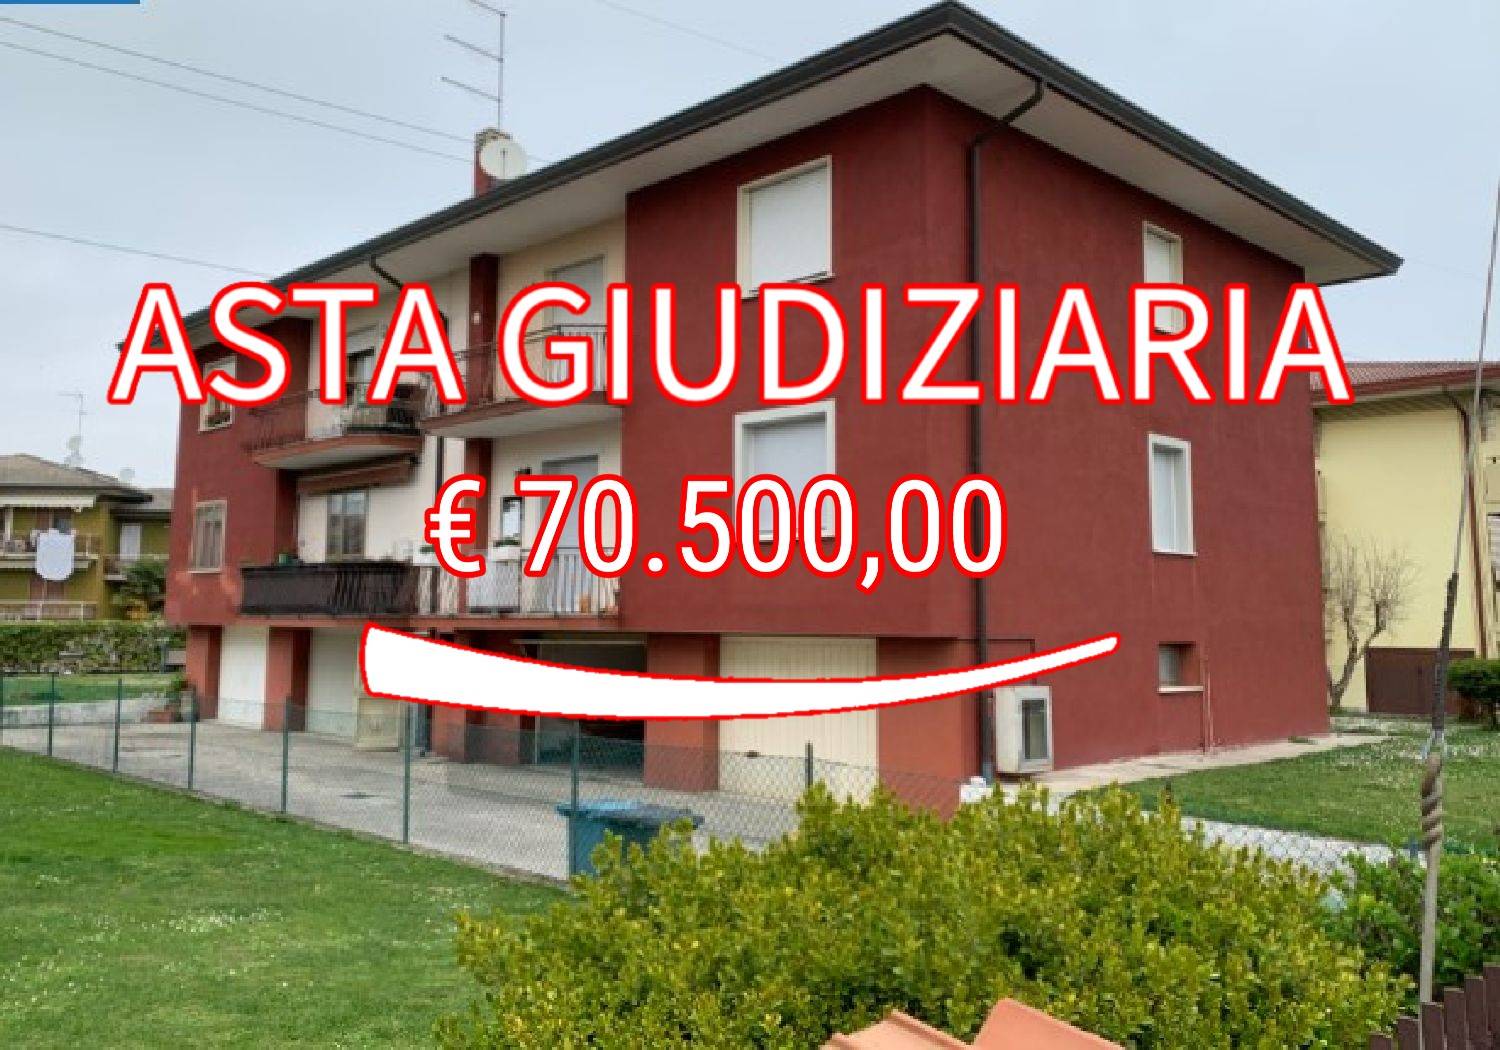 Appartamento in vendita a Preganziol, 5 locali, zona Località: BORGO VERDE, prezzo € 70.500 | CambioCasa.it